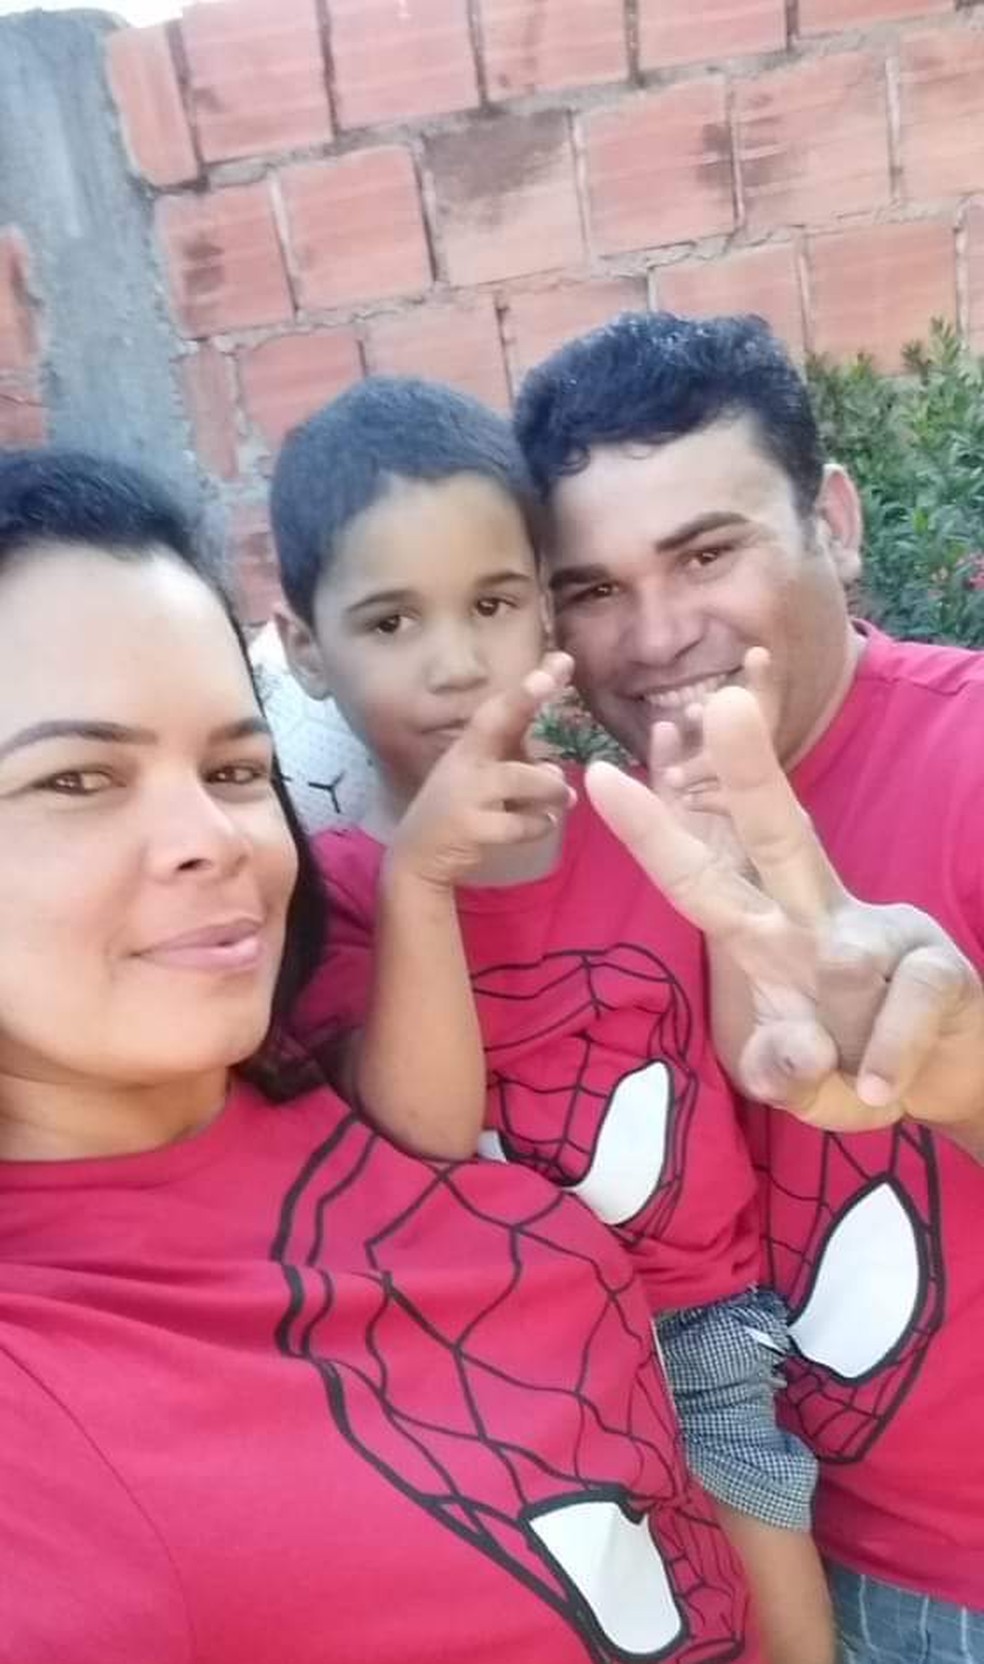 Daniel Augusto Costa morreu no acidente; foto foi tirada ontem com o pai e a madrasta, feridos no acidente — Foto: Arquivo pessoal